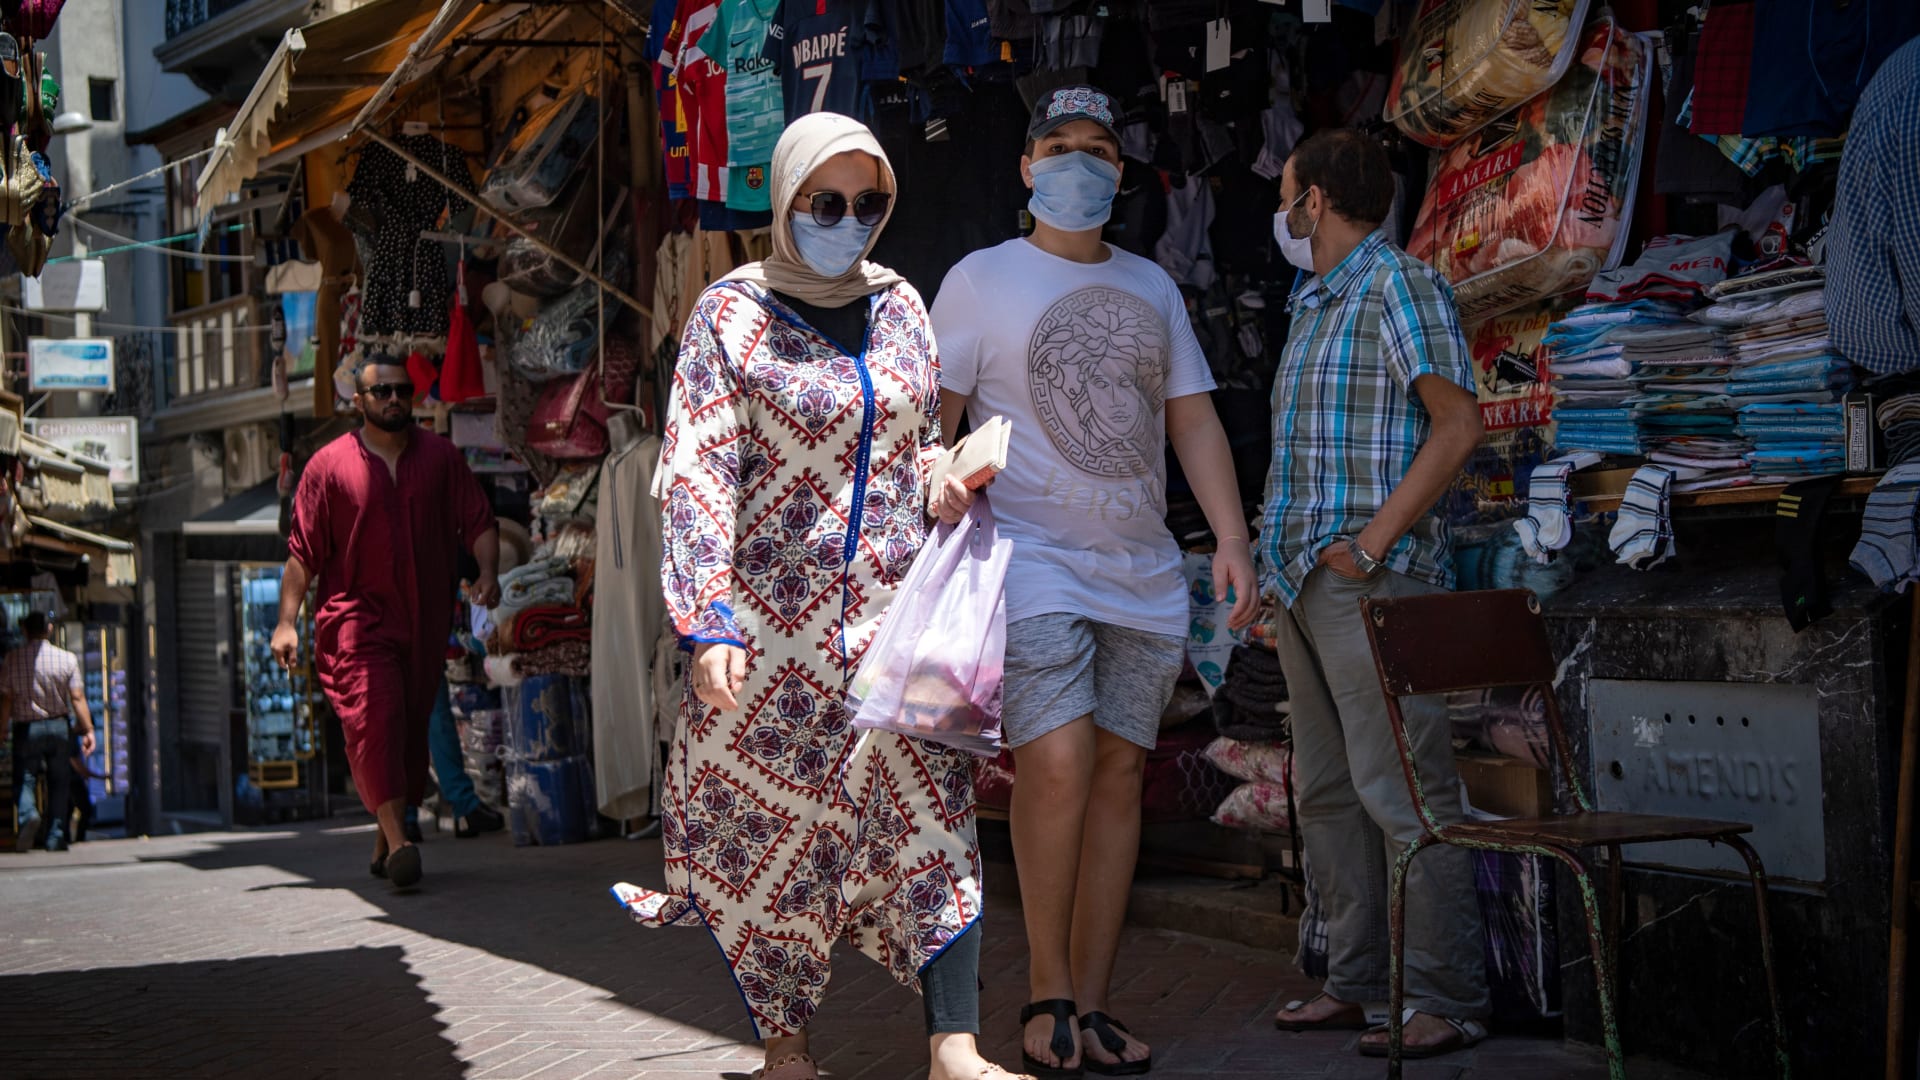 14 منها في المستوى الأعلى خطورة.. ما تصنيف الدول العربية من حيث مخاطر السفر بظل فيروس كورونا؟